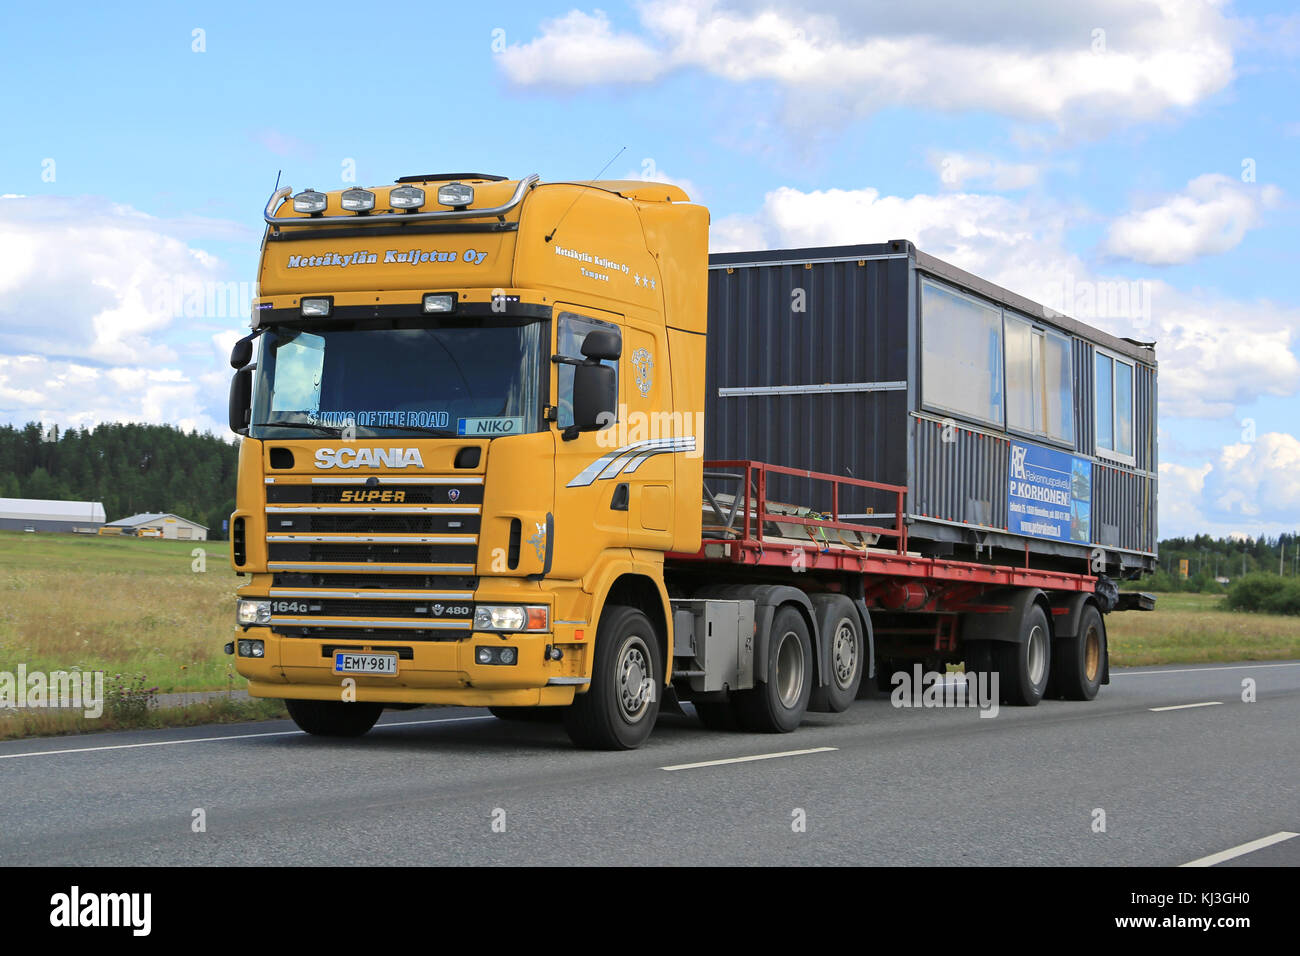 Mariehamn, Finnland - 25. Juli 2015: Scania 164 g Lkw schleppt einen tragbaren Kabine. Tragbare Kabinen werden oft als als temporäre Büros auf Baustellen verwendet. Stockfoto